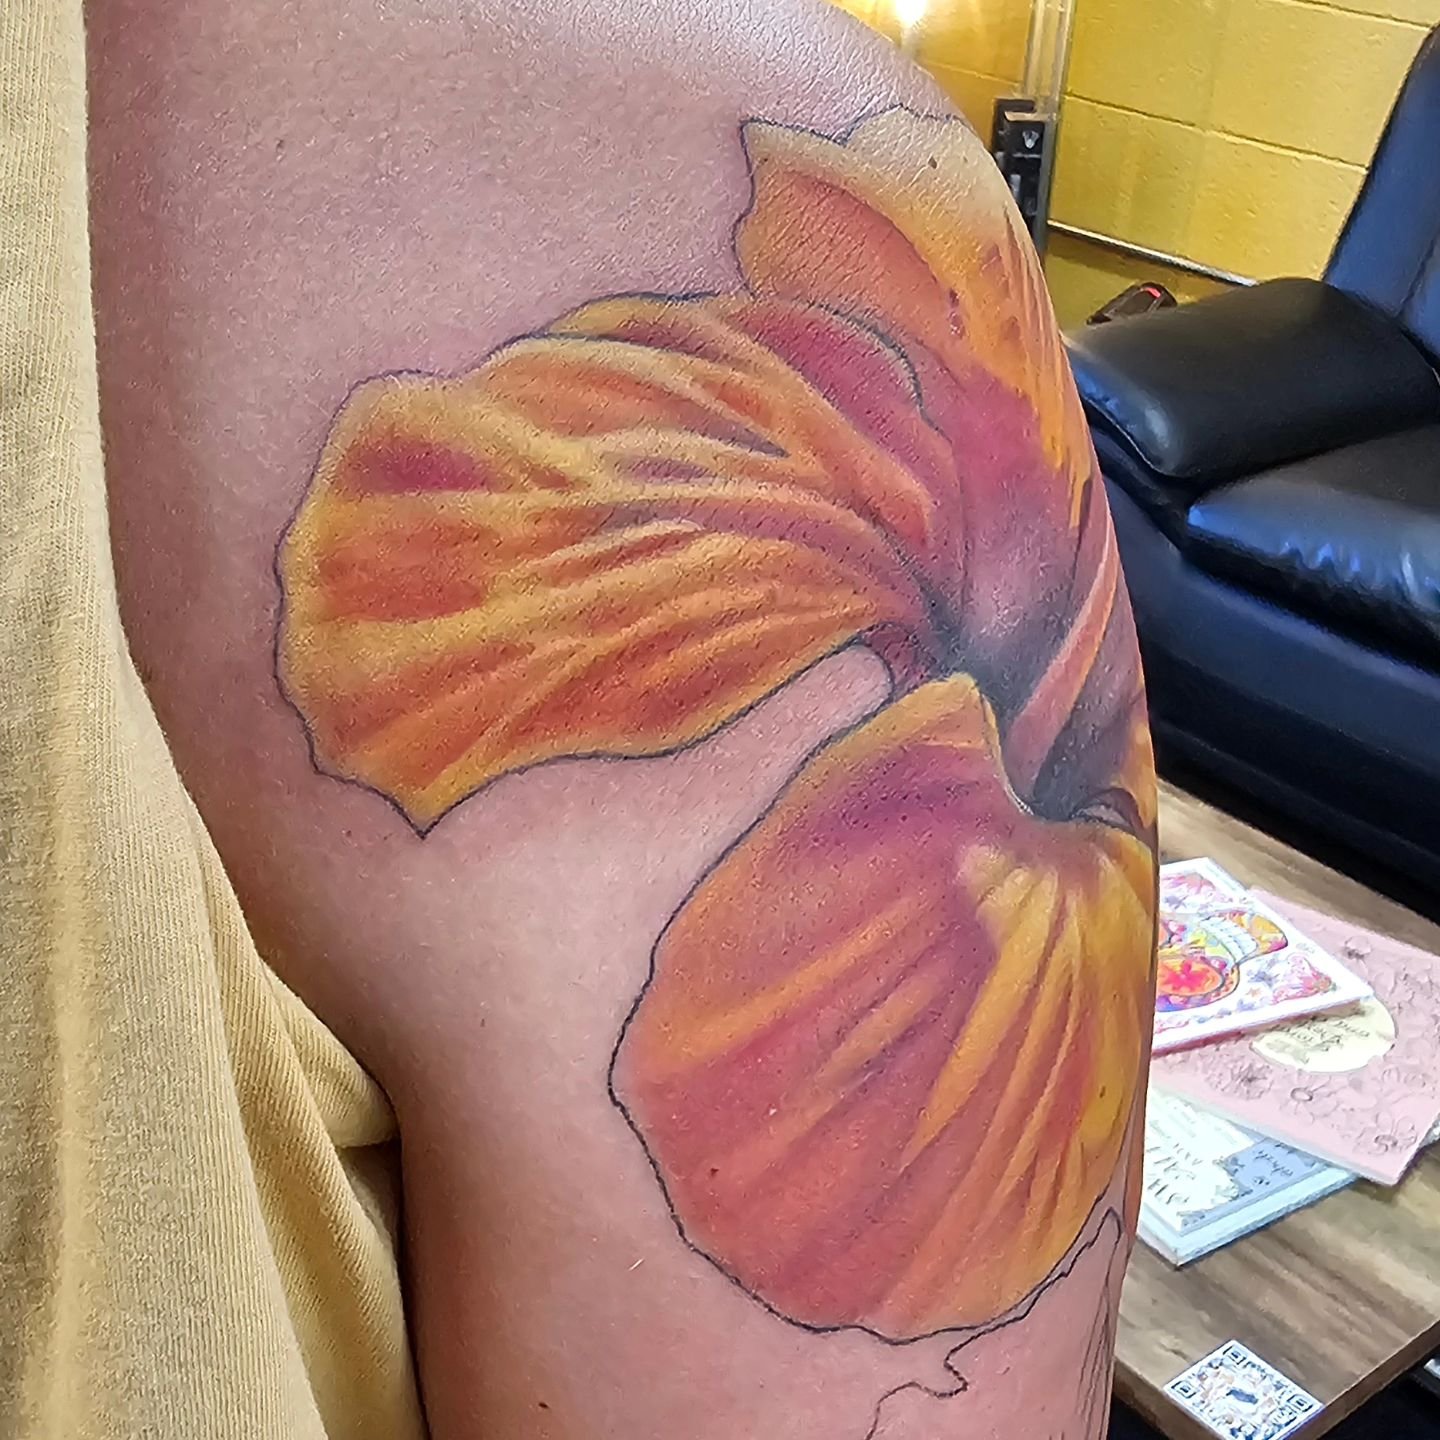 First flower done on this tropical themed sleeve.

.
.
.

#alohasaltlaketattoos #alohasaltlake #alohaisallyouneed #alohatattoo #saltlaketattoos #saltlaketattooartist #teamalohastrong #tattoos #tattooartist #utahtattoos #utahtattooartist